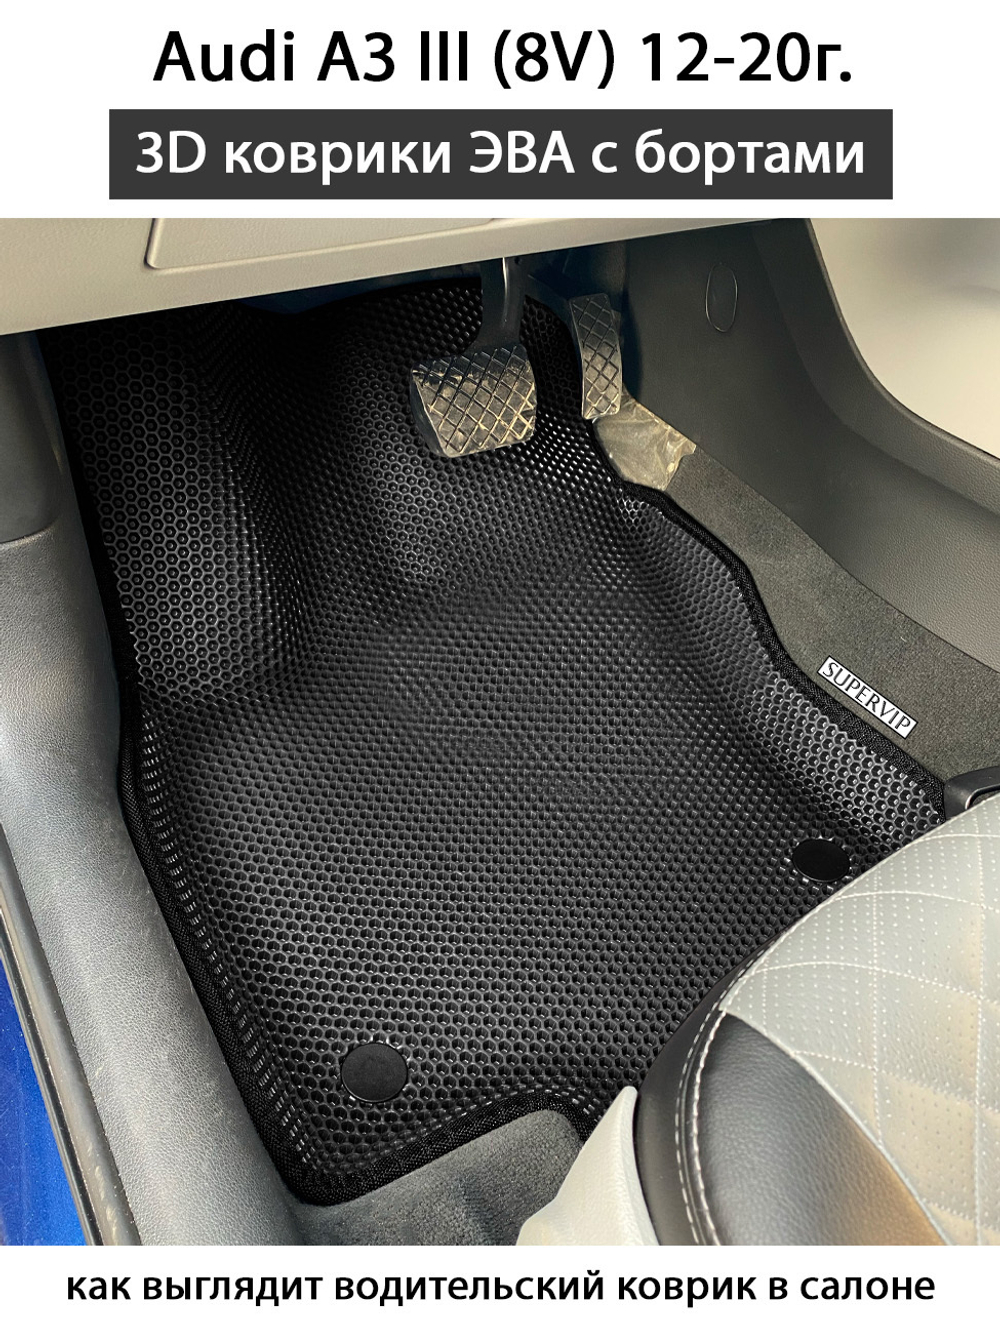 передние эва коврики в салон автомобиля audi a3 III 8v от supervip